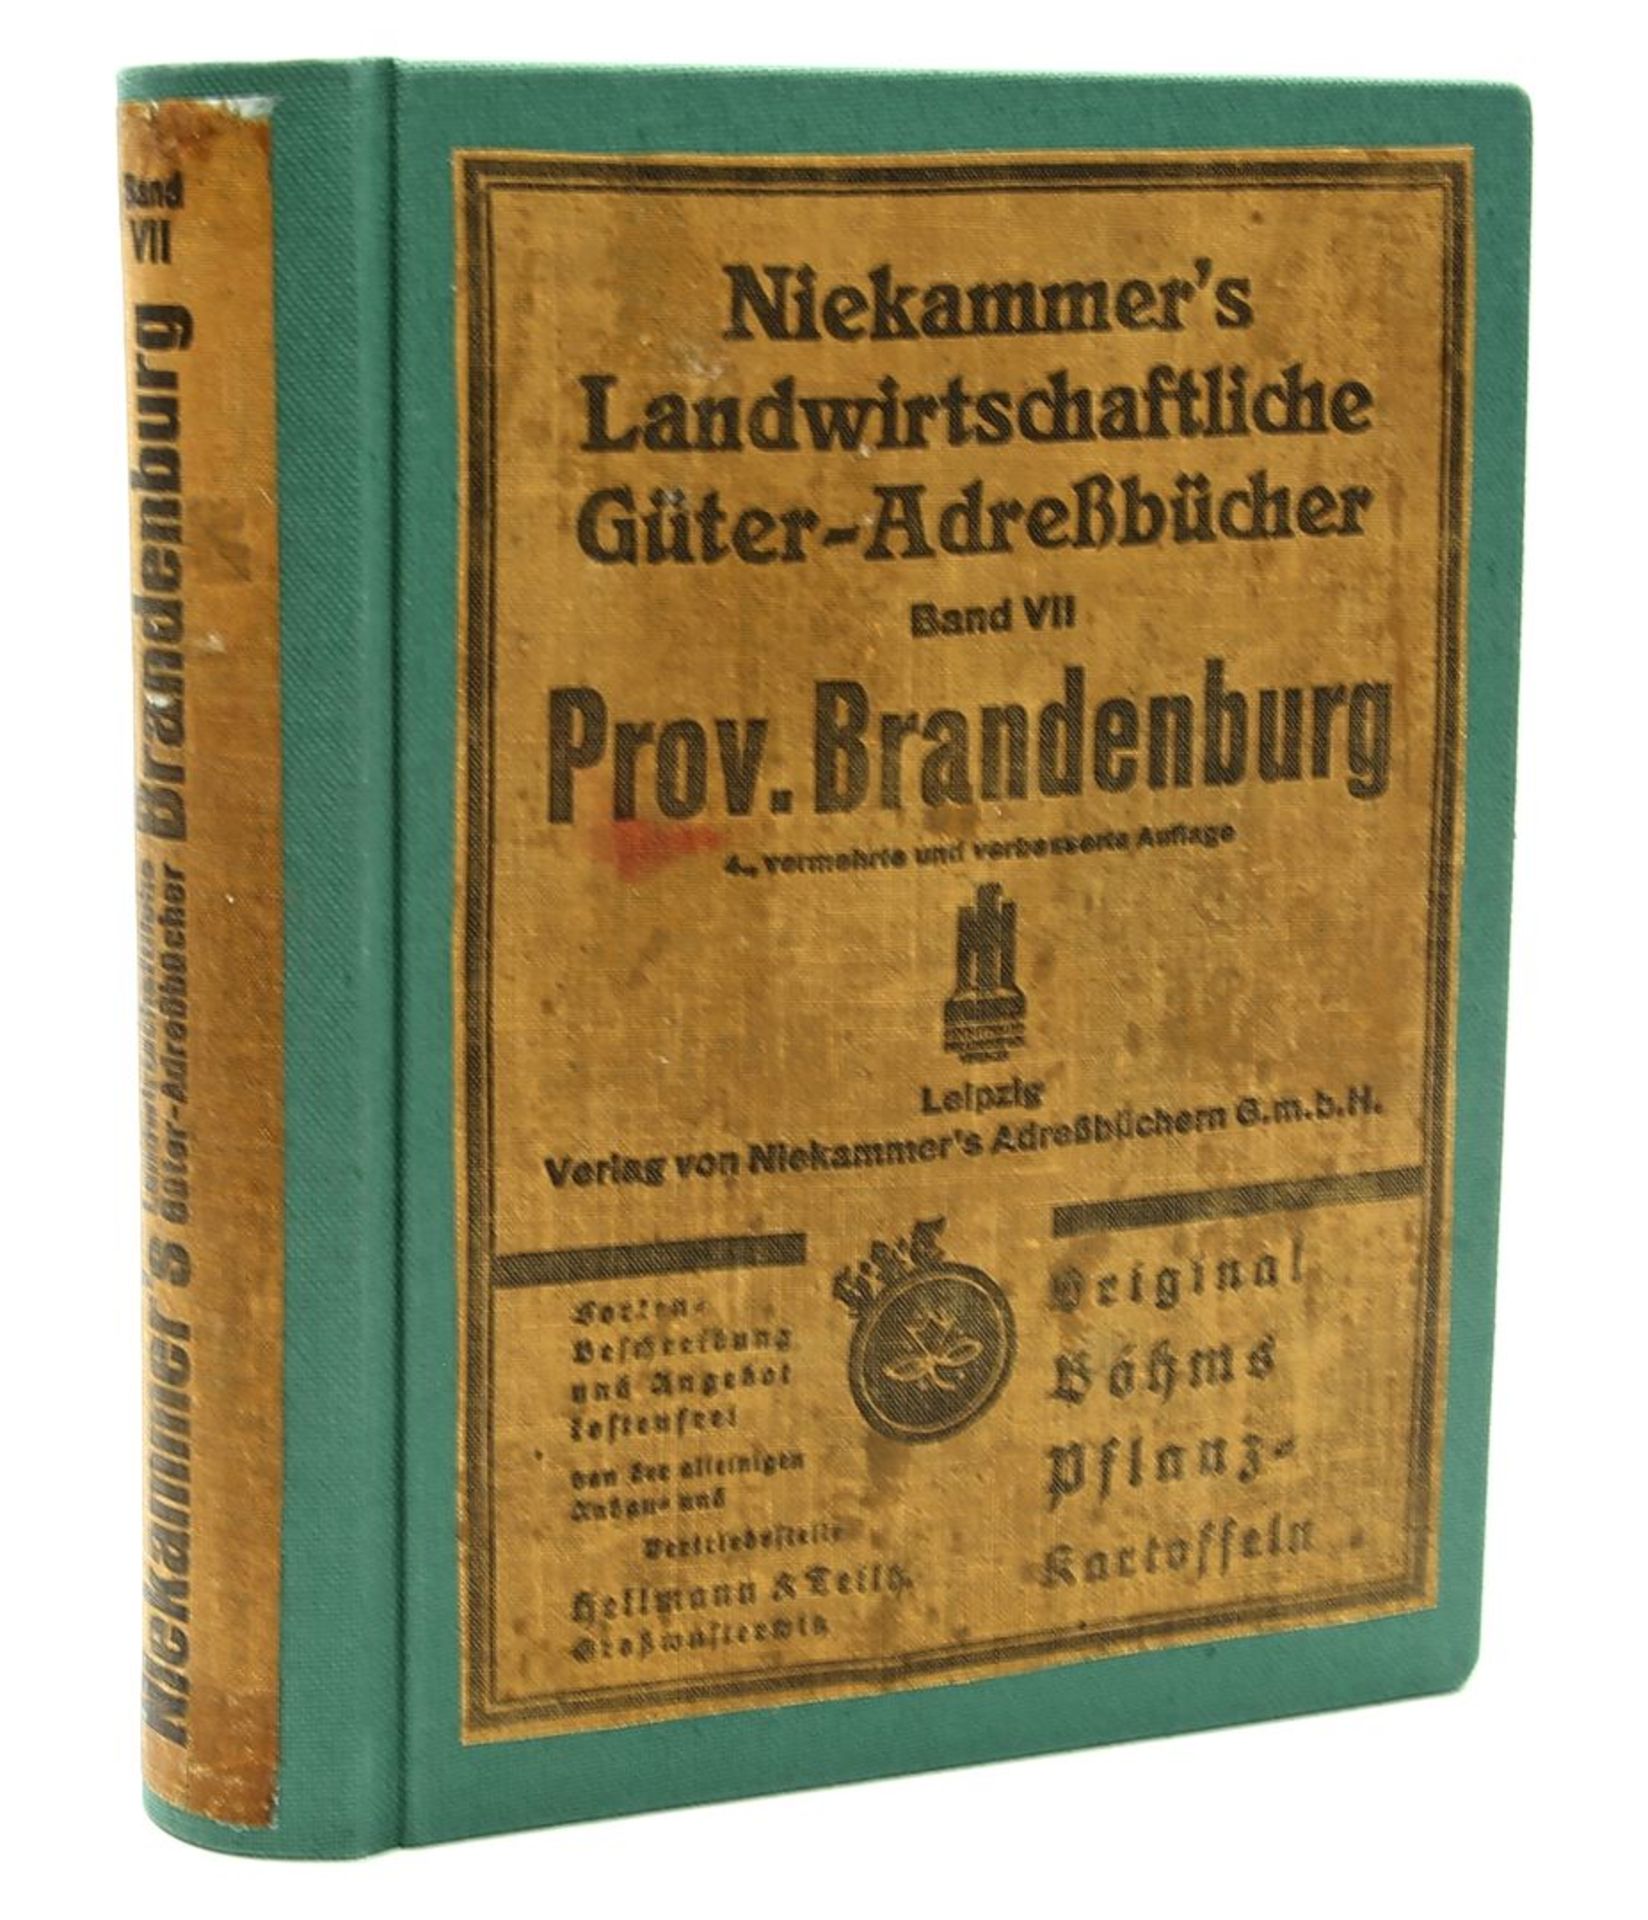 Niekammer's Landwirtschaftliche Güter-Adressbuch.